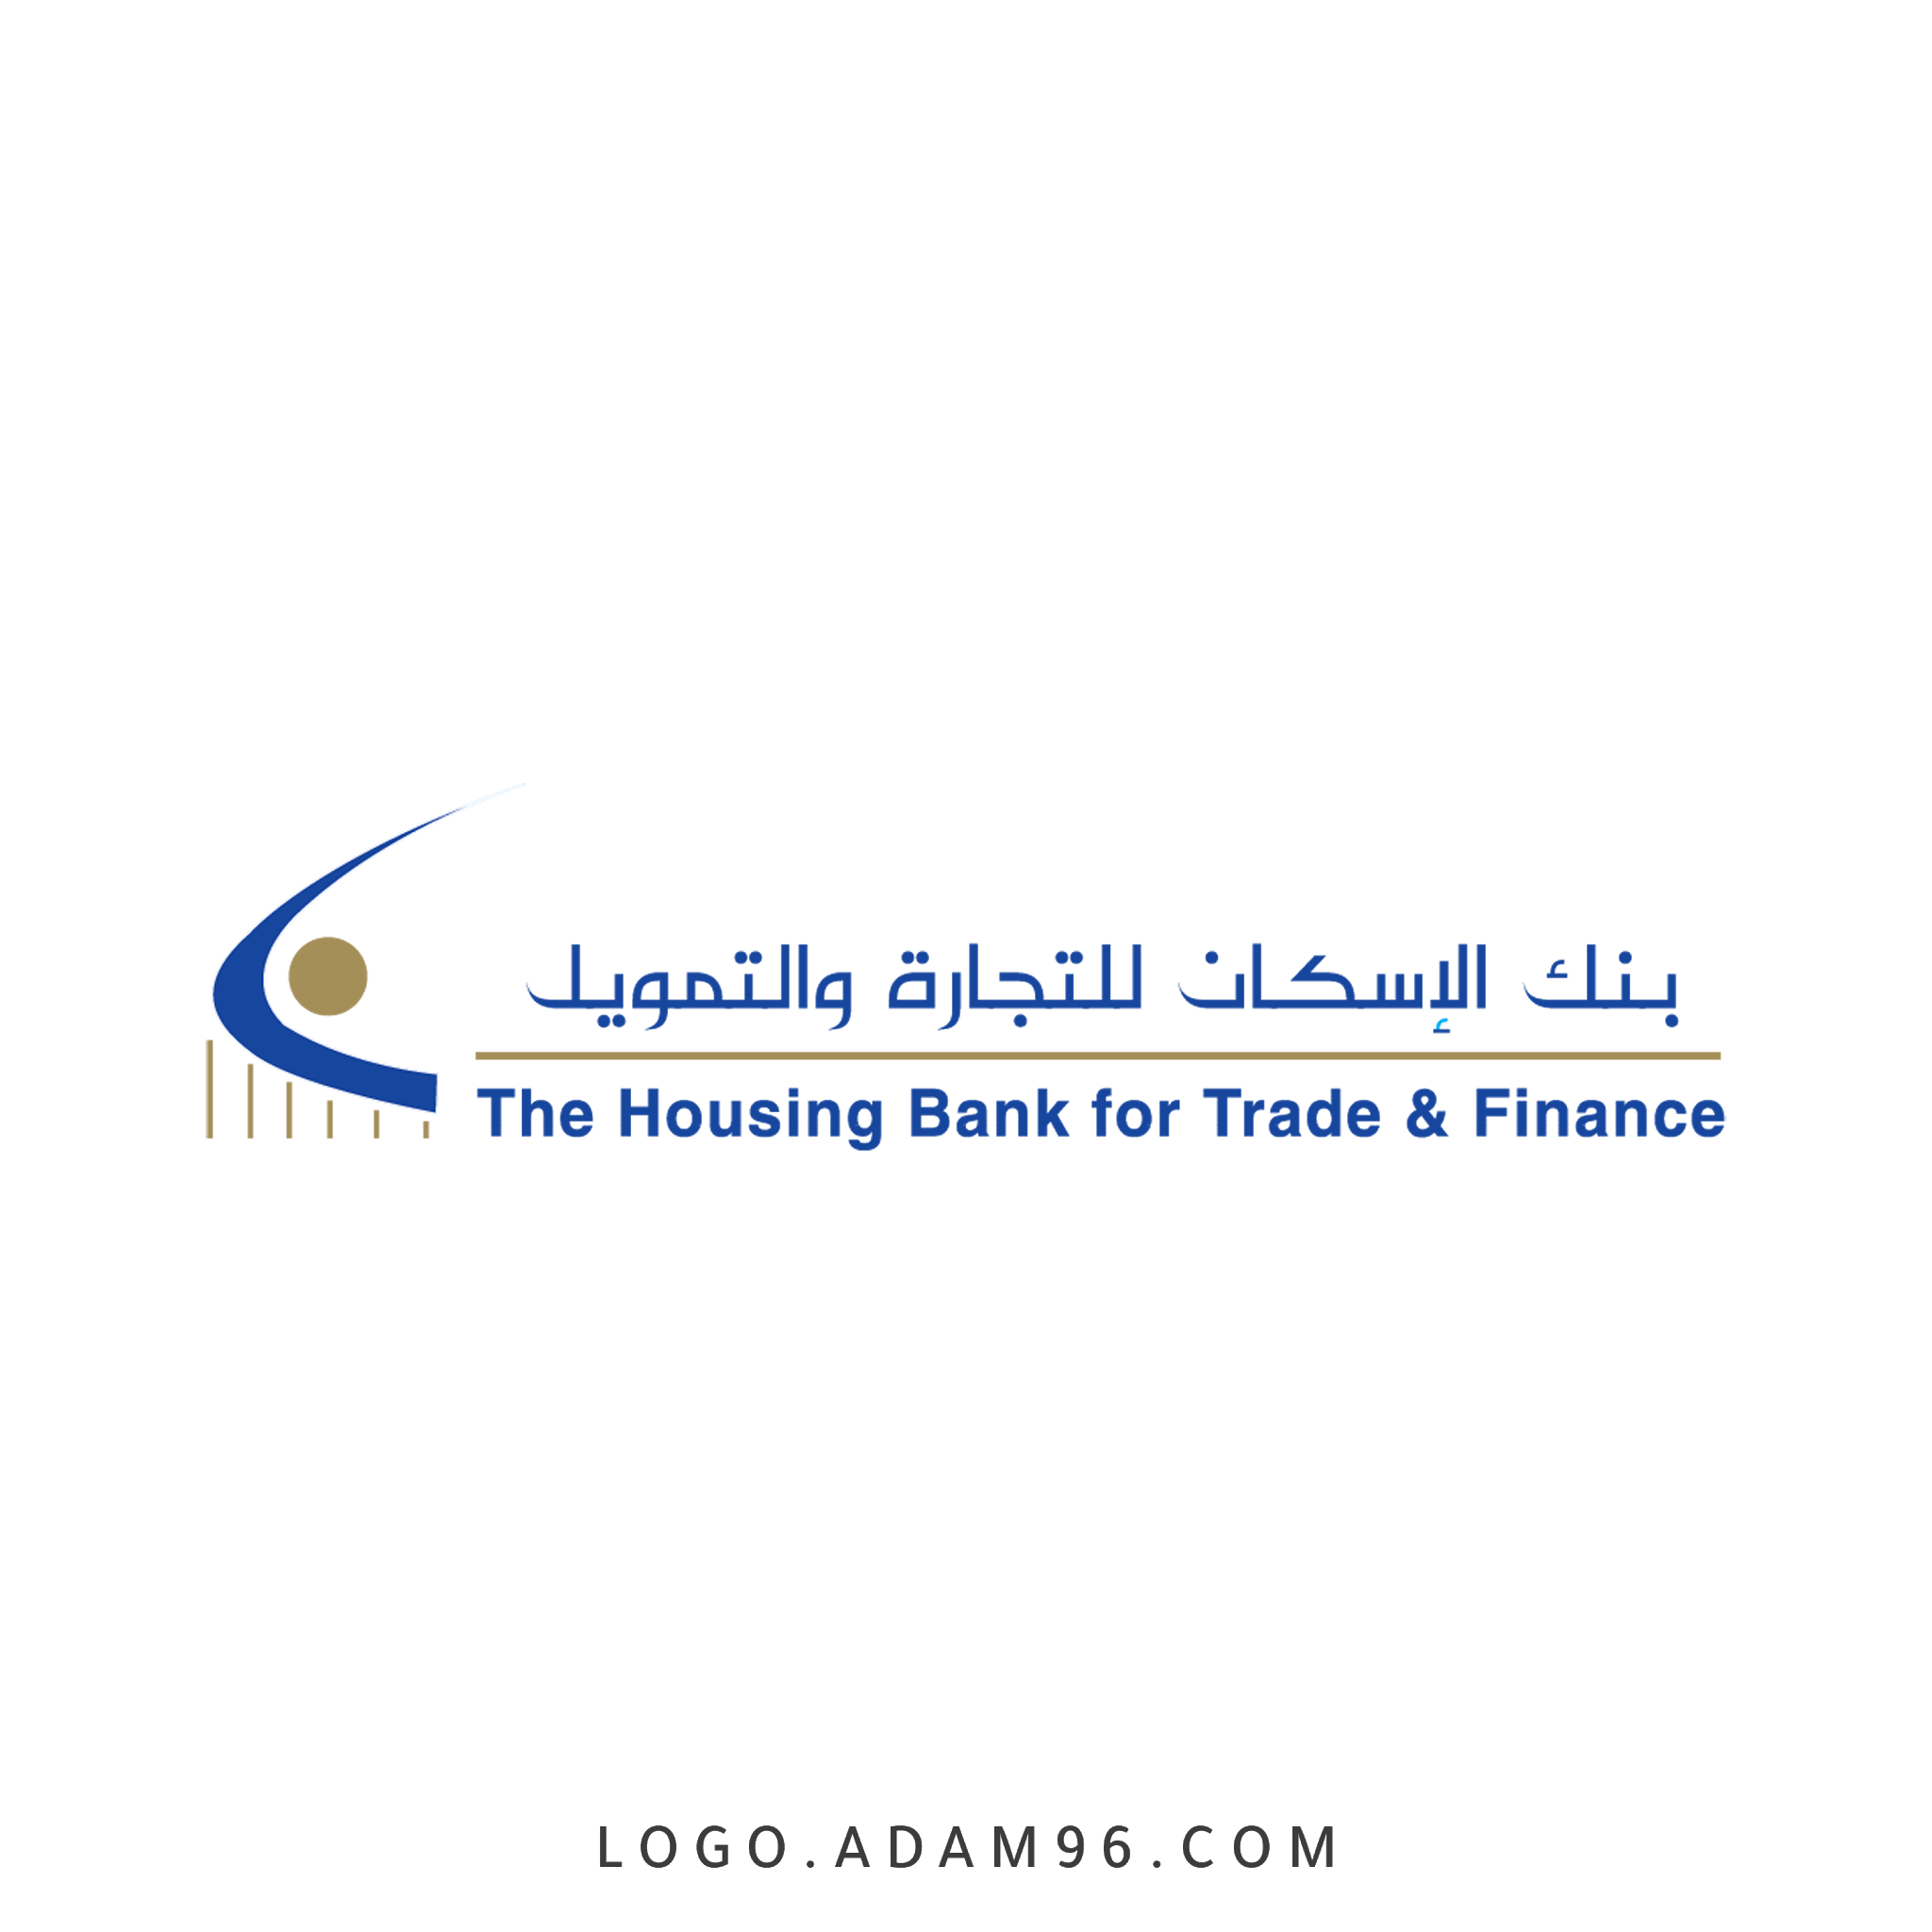 تحميل شعار بنك الاسكان التجارة والتمويل - فلسطين لوجو رسمي PNG